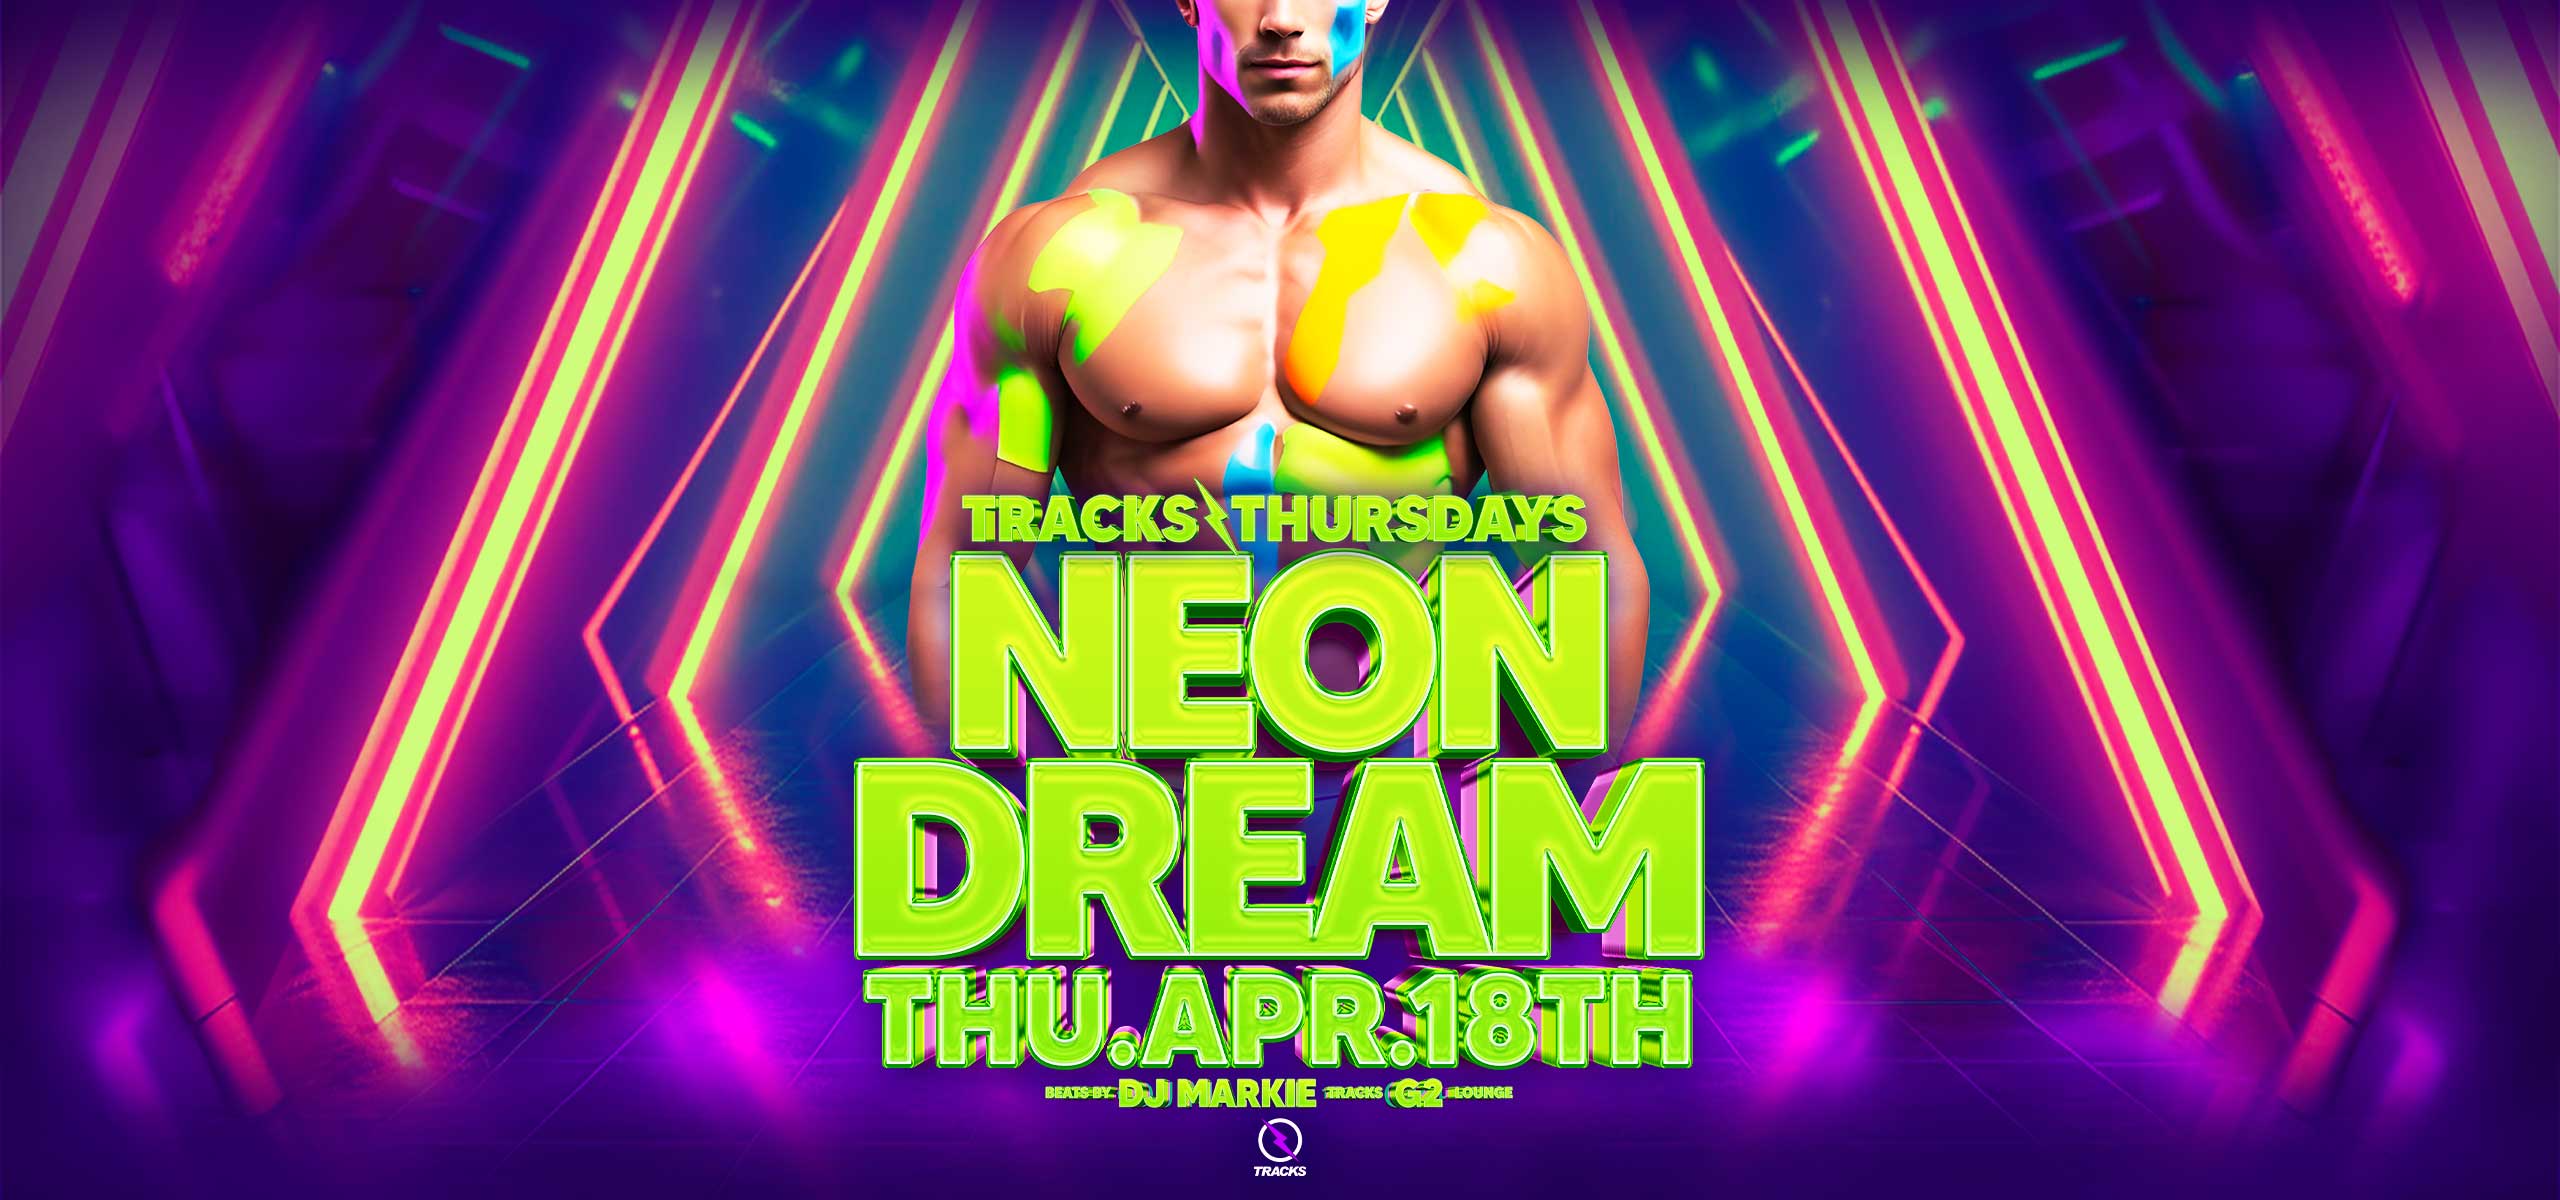 18+ Neon Dream Ft. DJ Markie + Garthy Garth + G2